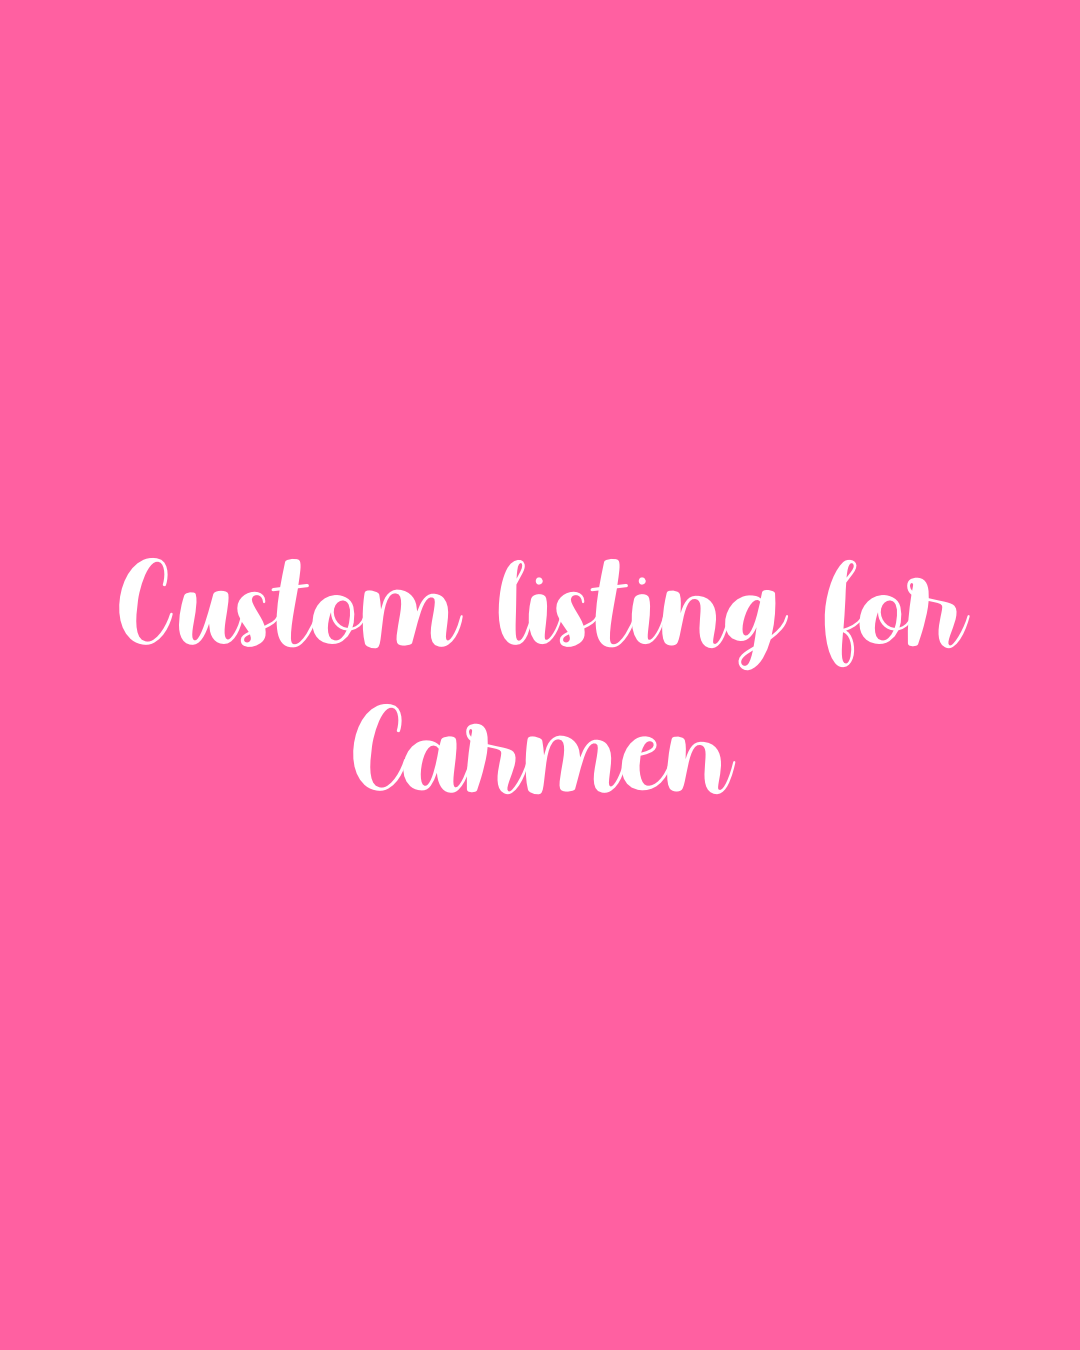 Custom listing for Carmen